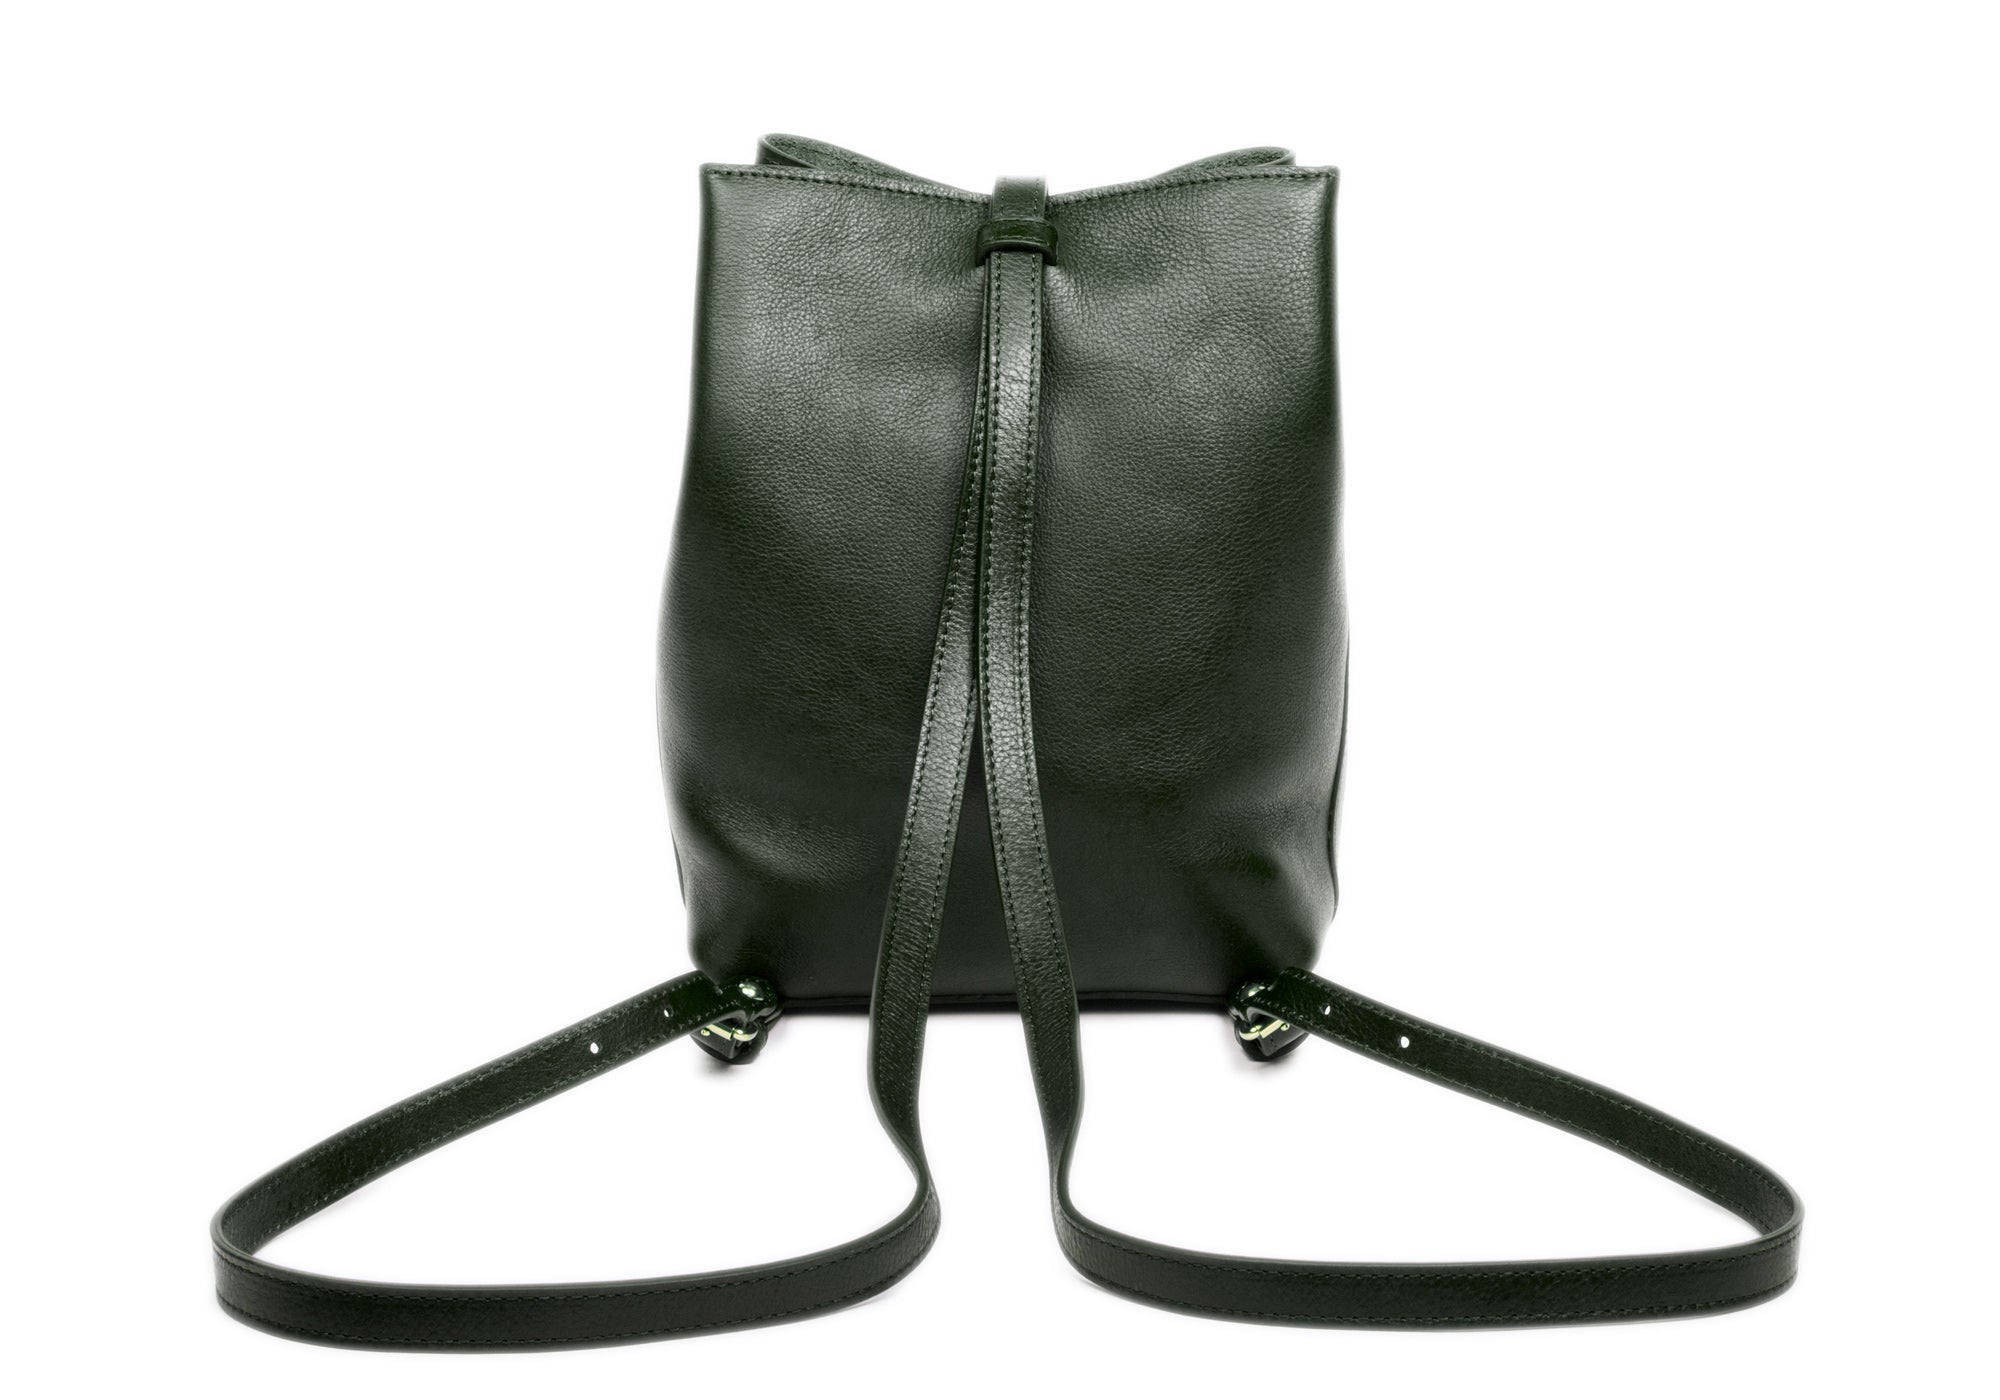 The Mini Sling Backpack Green